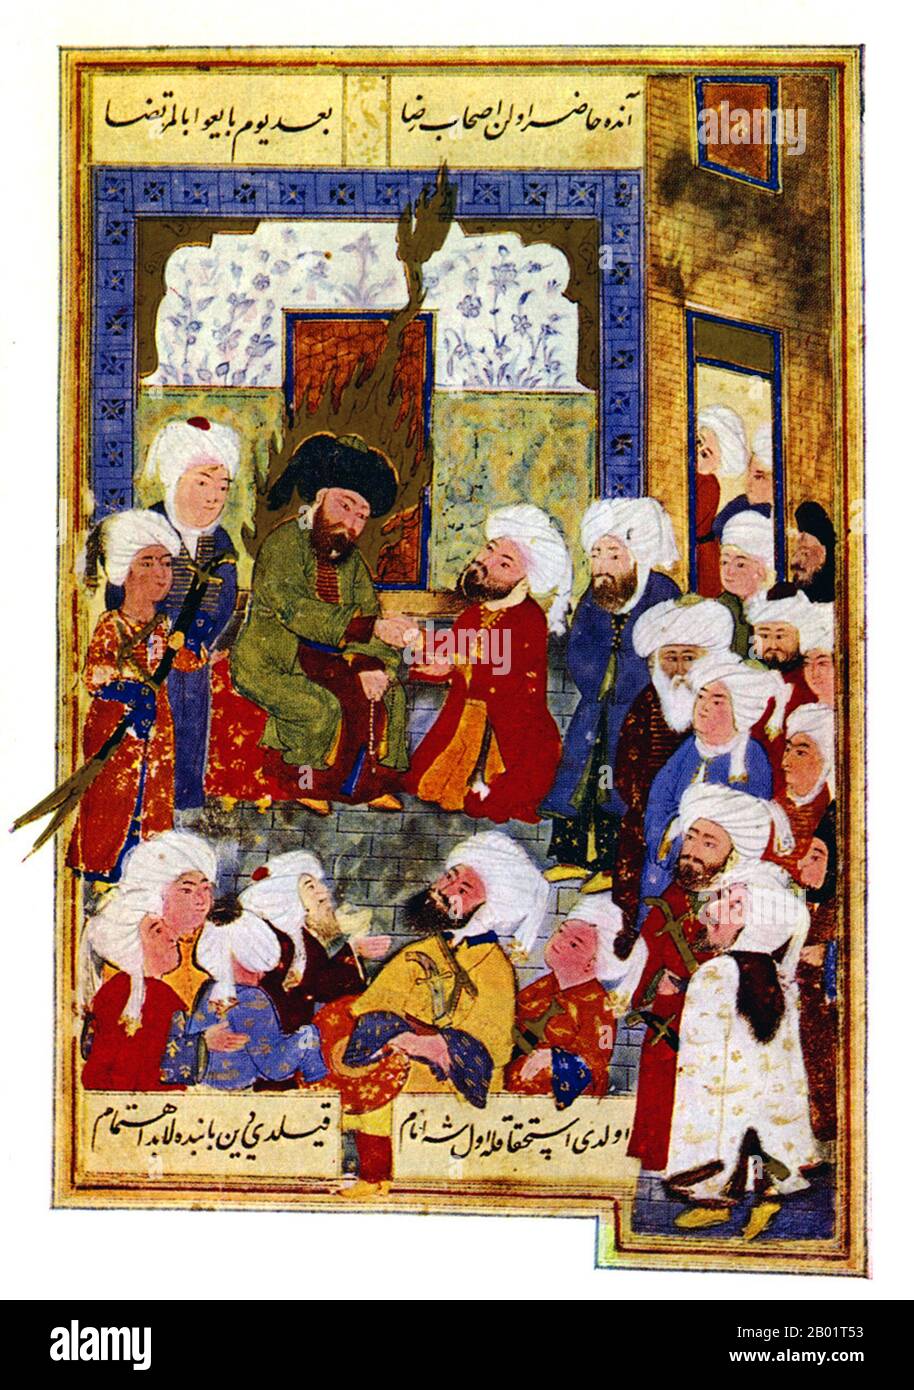 Türkei: Ali ibn Talib, Schwiegersohn des Propheten Muhammad, erhält den Treueeid als 4. Rashidun Kalif in Kufa. Miniaturmalerei, 16. Jahrhundert. Alī ibn Abī Ṭālib (ca. 598-661 n. Chr.) war der Sohn von Abu Talib und Cousin und Schwiegersohn des Propheten Muhammad. Er regierte von 656 bis 661 über das Islamische Kalifat und war der erste männliche Konvertit zum Islam. Sunniten betrachten Ali als vierten und letzten der Rashidun-Kalifen, während Schiiten Ali als ersten Imam betrachten und ihn und seine Nachkommen als rechtmäßige Nachfolger Mohammeds betrachten. Stockfoto